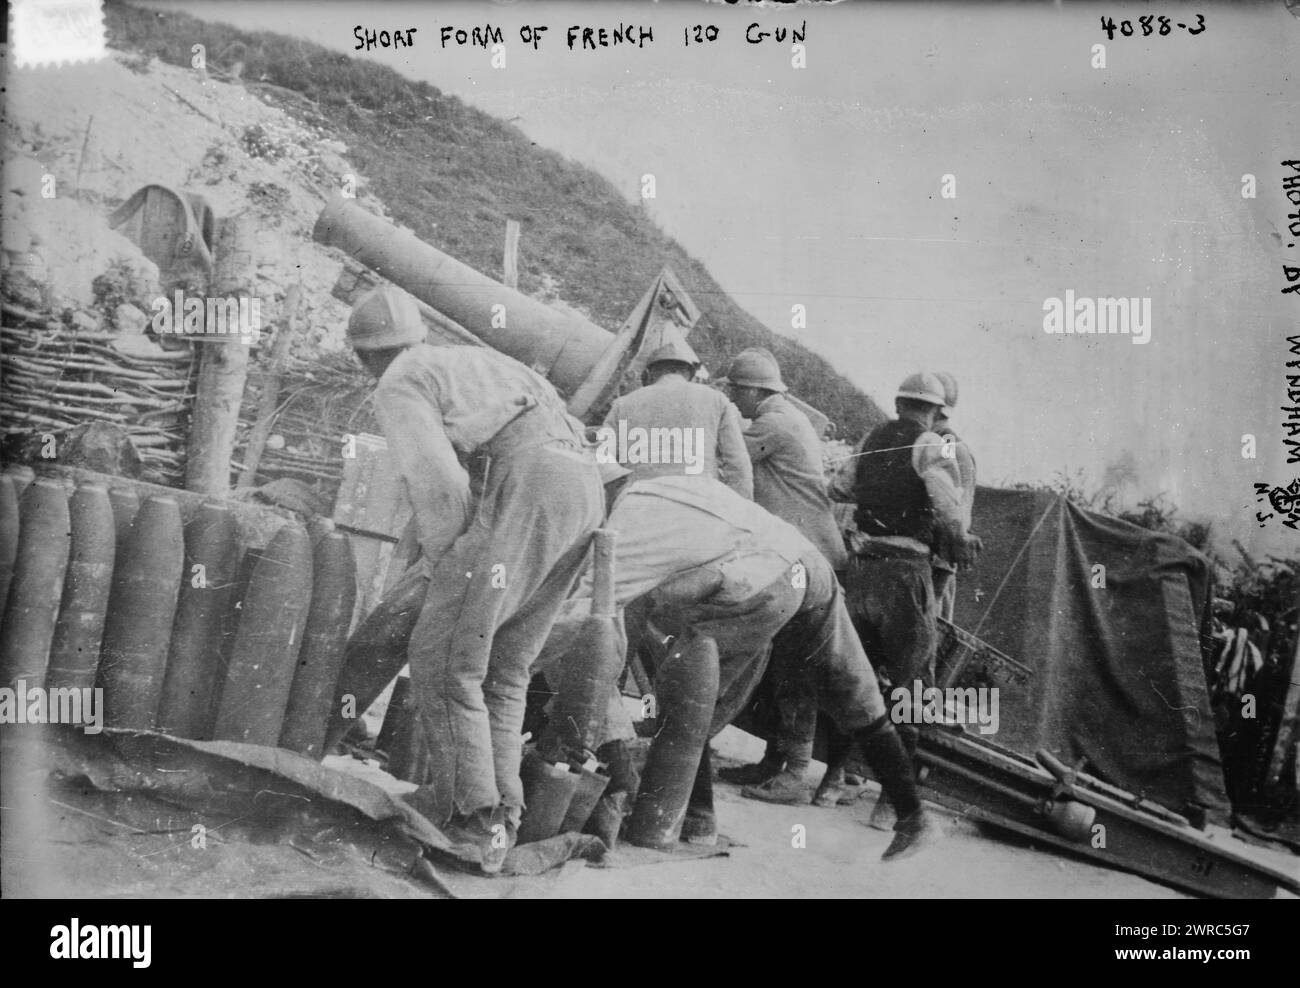 Forme abrégée d'un canon français de 120, la photographie montre un canon d'artillerie français Schneider utilisé pendant la première Guerre mondiale, entre env. 1915 et env. 1920, Guerre mondiale, 1914-1918, négatifs en verre, 1 négatif : verre Banque D'Images